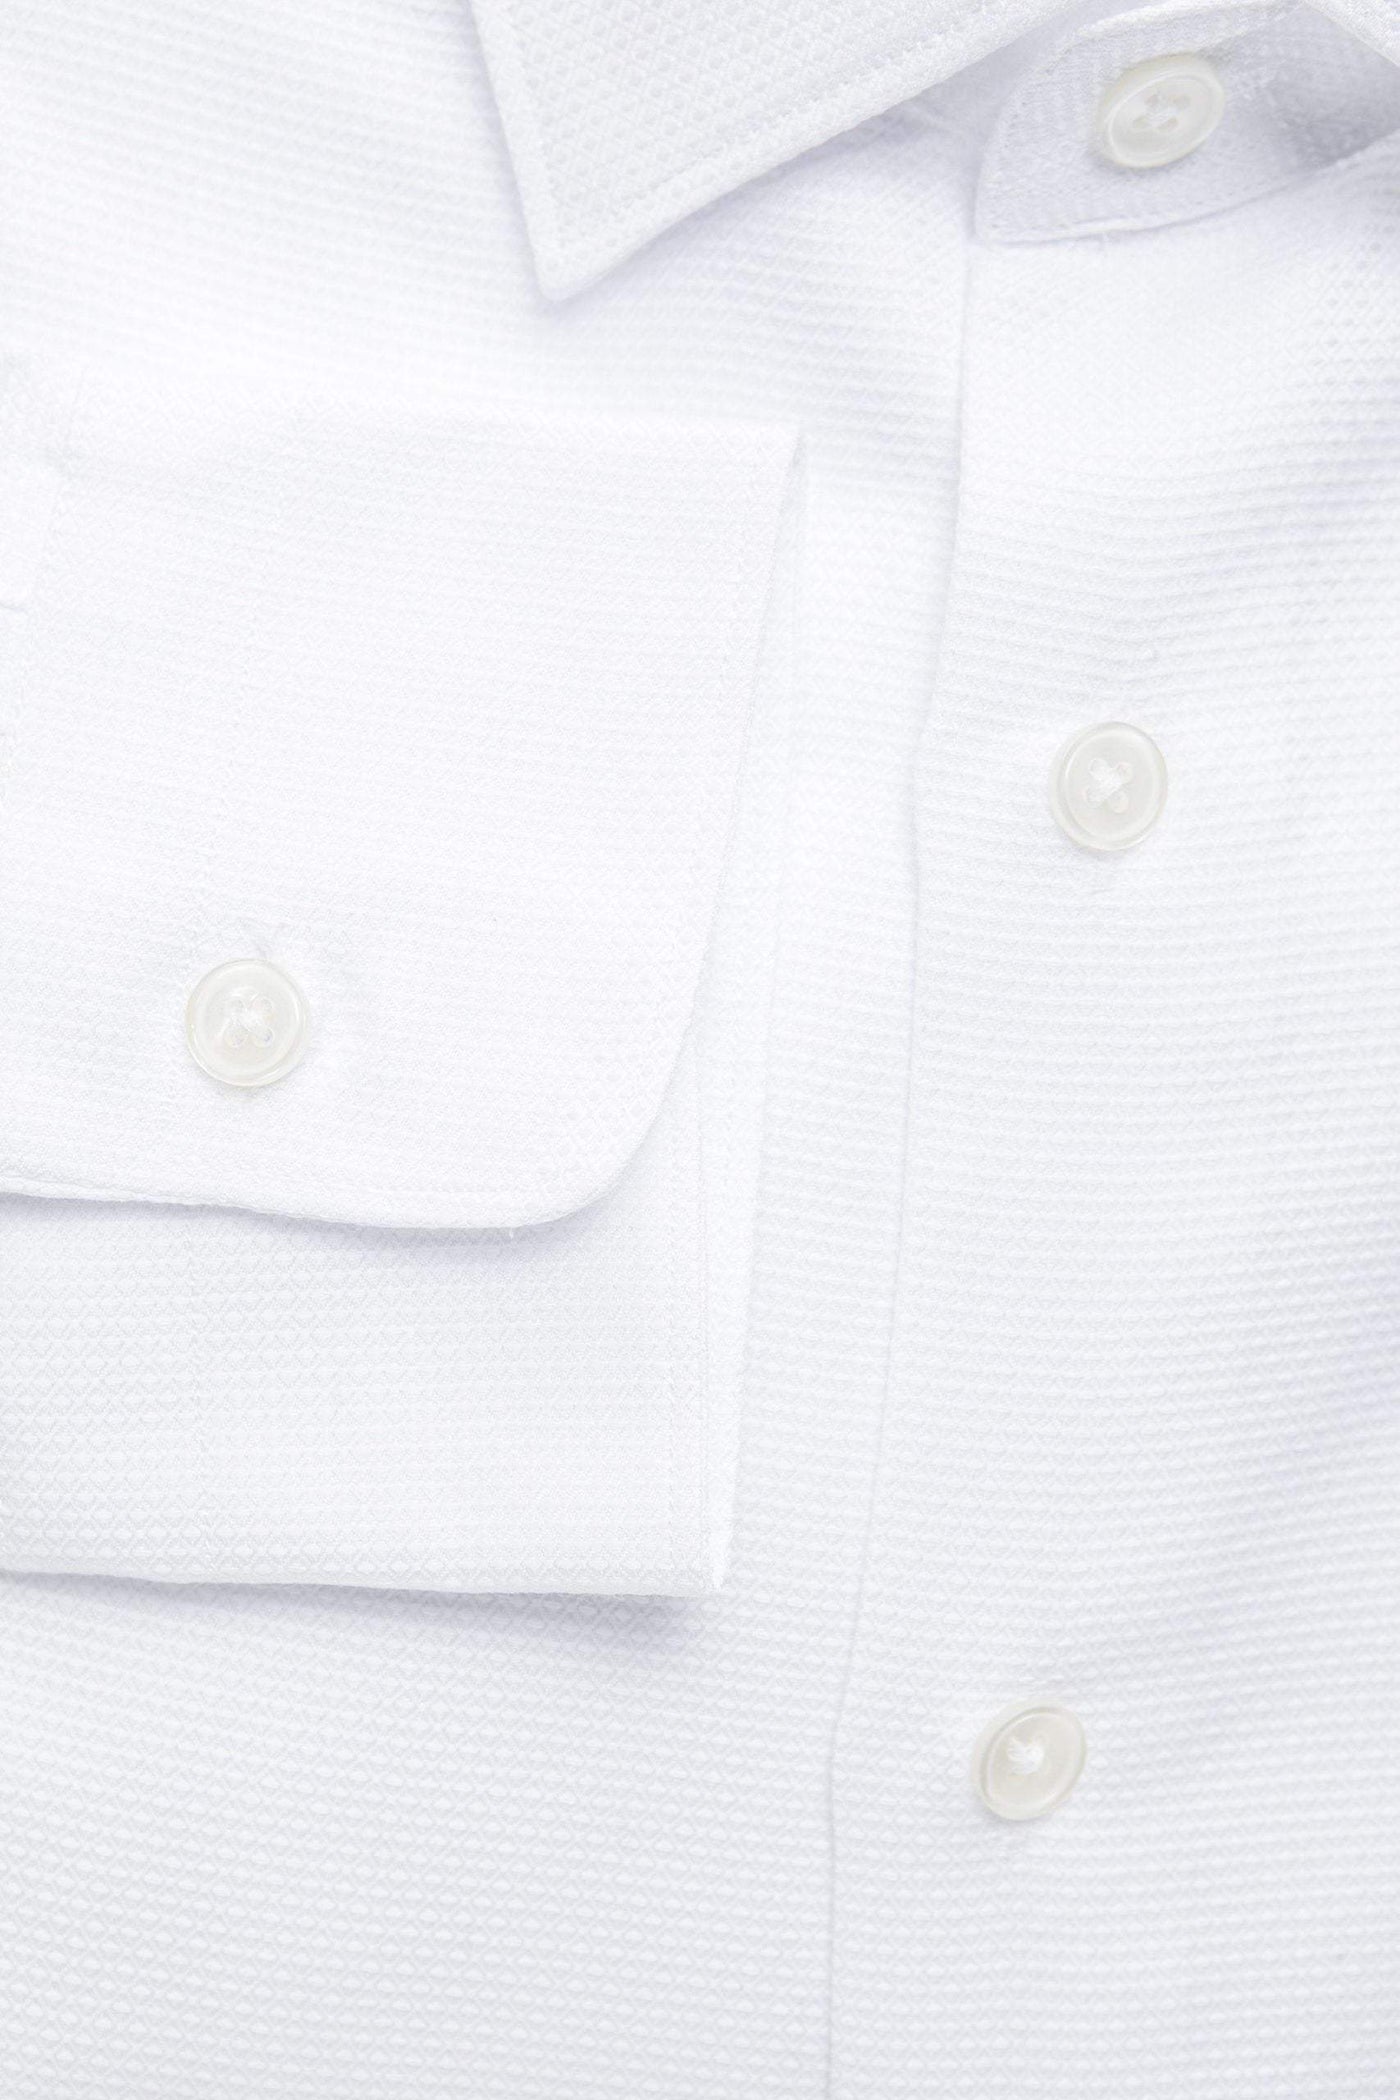 Robert Friedman White Cotton Shirt #men, feed-1, IT40 | M, IT41 | L, IT42 | XL, IT43 | 2XL, Robert Friedman, Shirts - Men - Clothing, White at SEYMAYKA